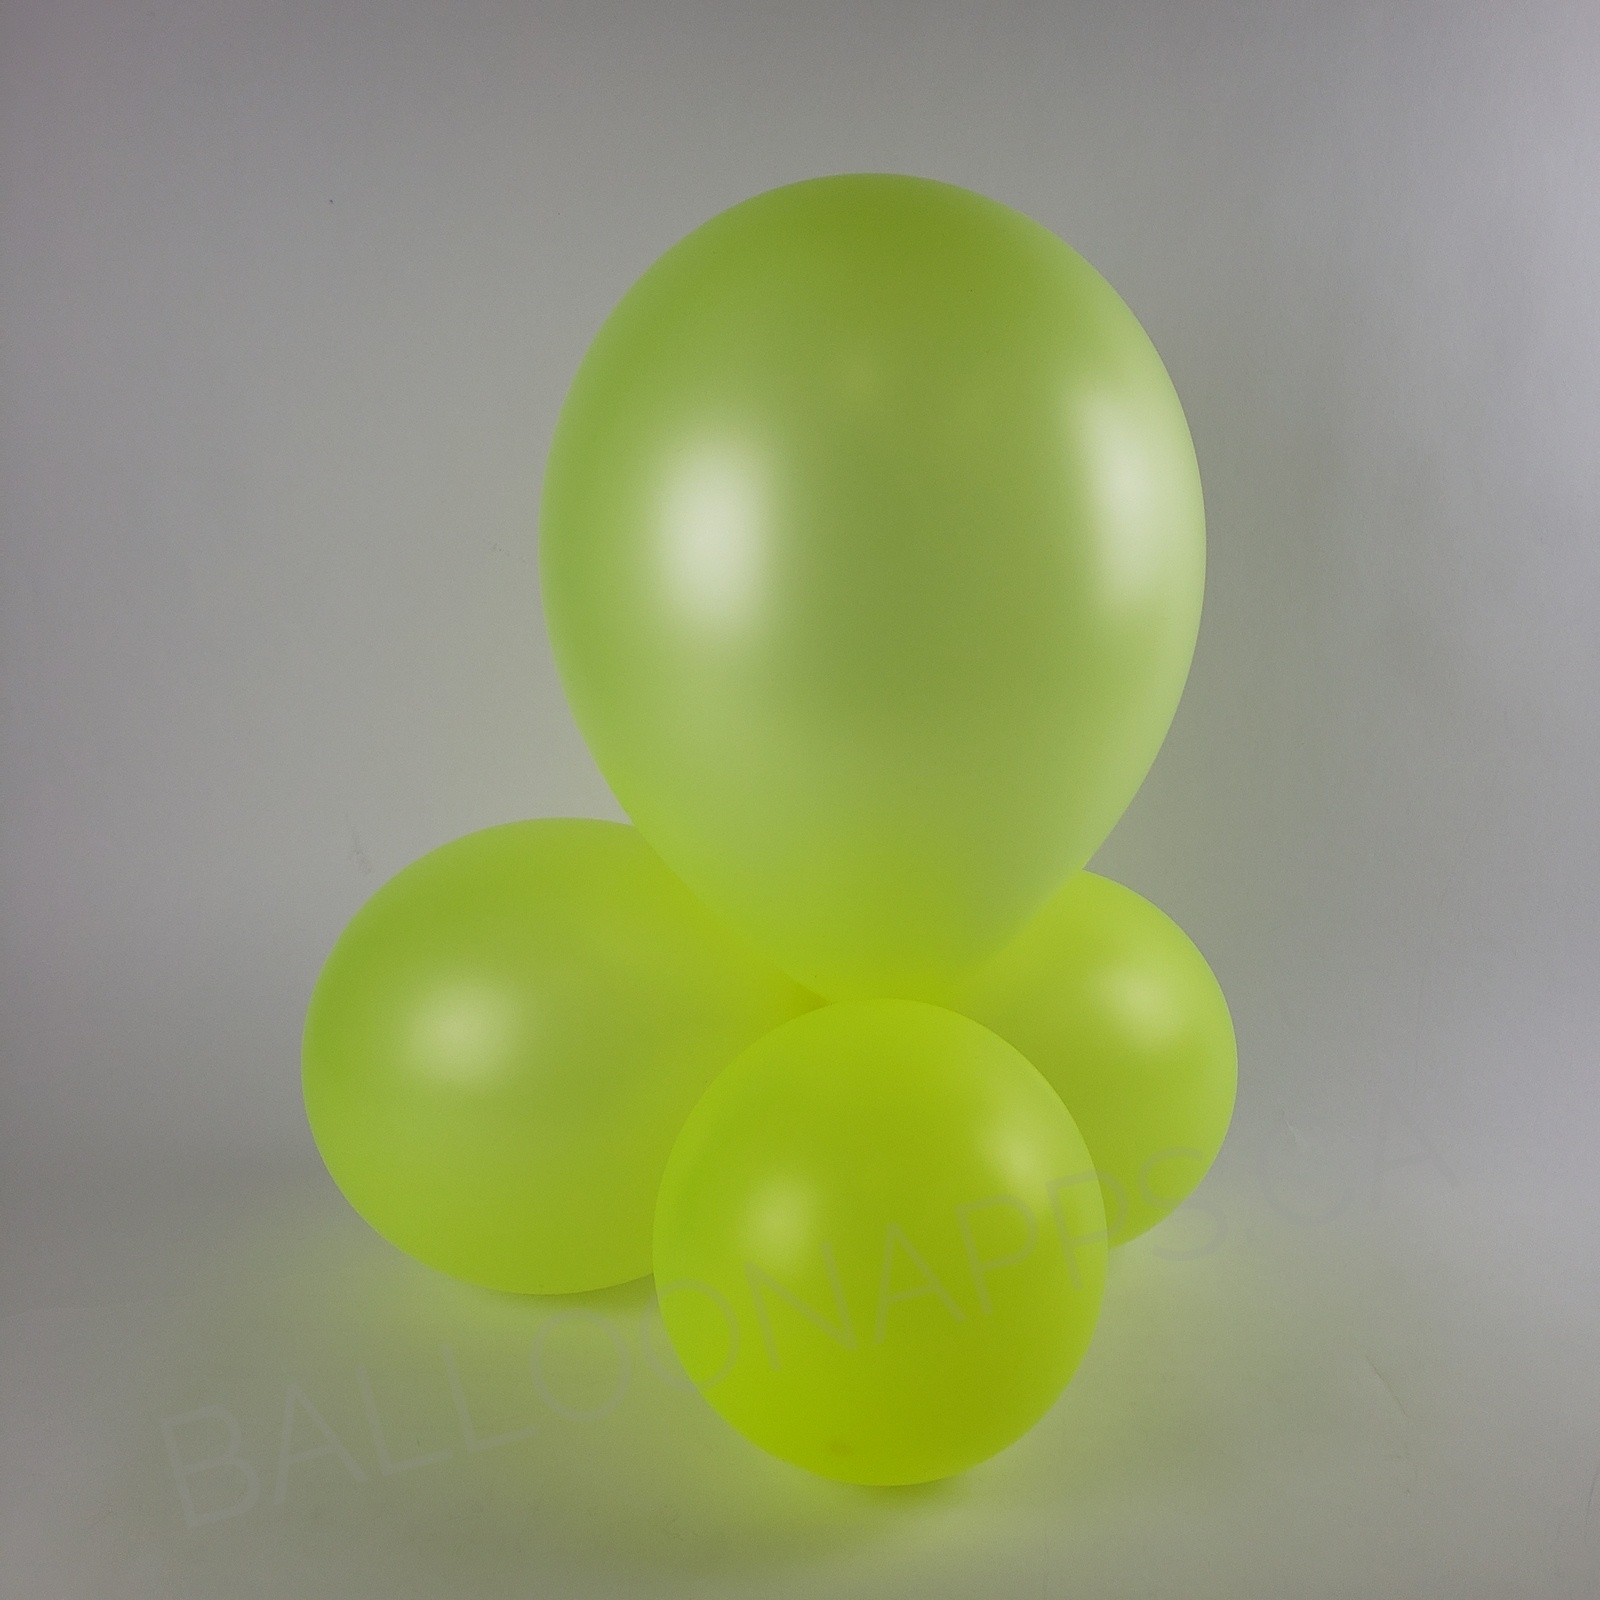 balloon texture SEM (50) 260 Neon Yellow balloons